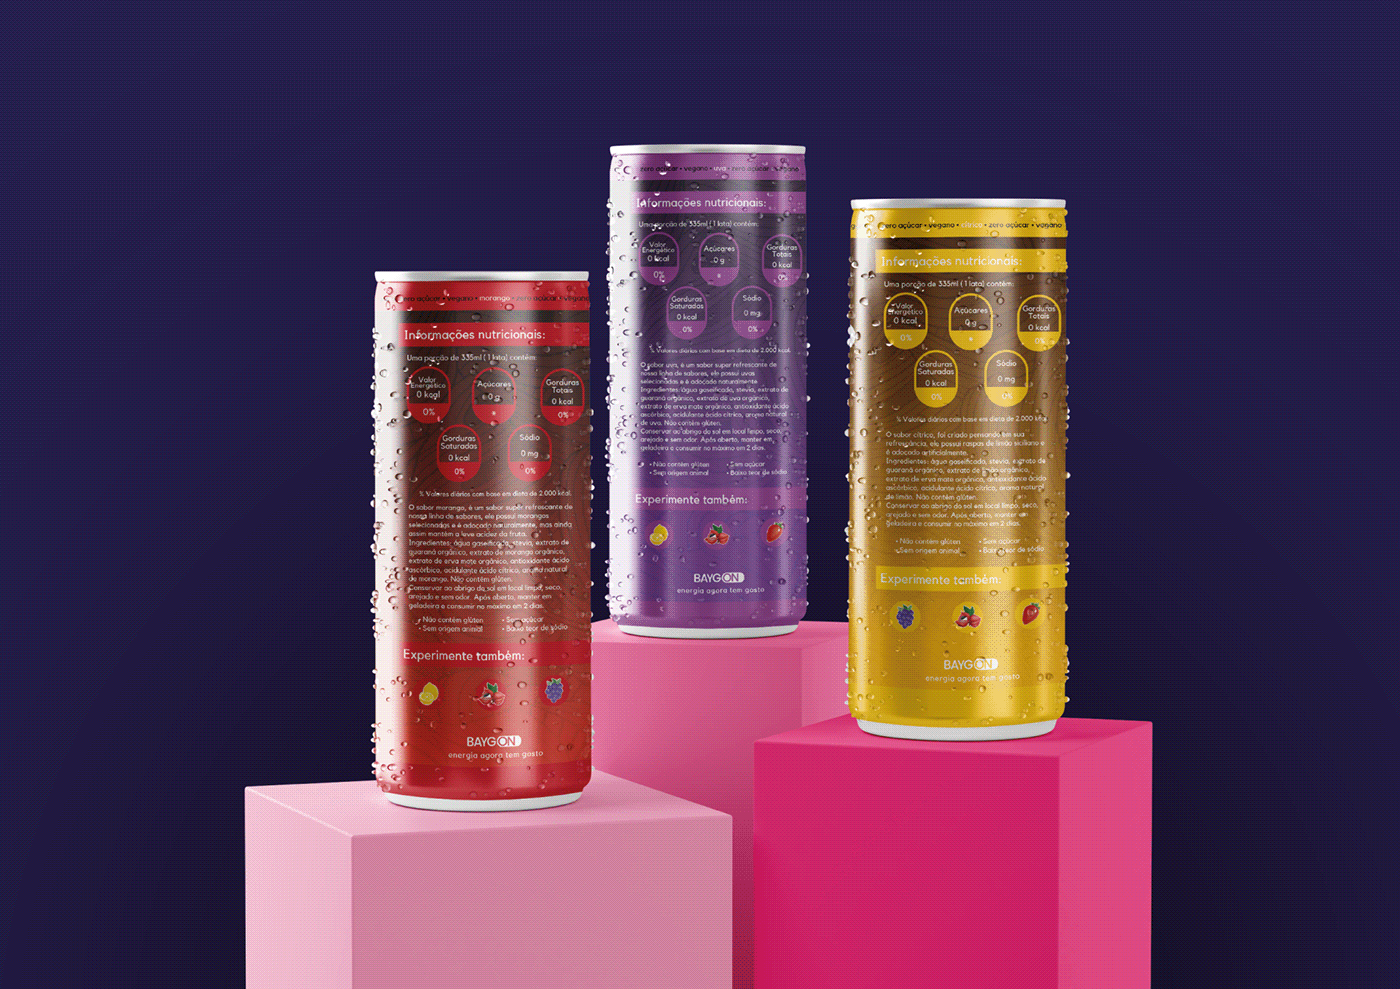 bebidas energeticas brandbook design gráfico embalagem energéticos saudaveis identidade visual Logotipo redesign redirecionamento tipografia